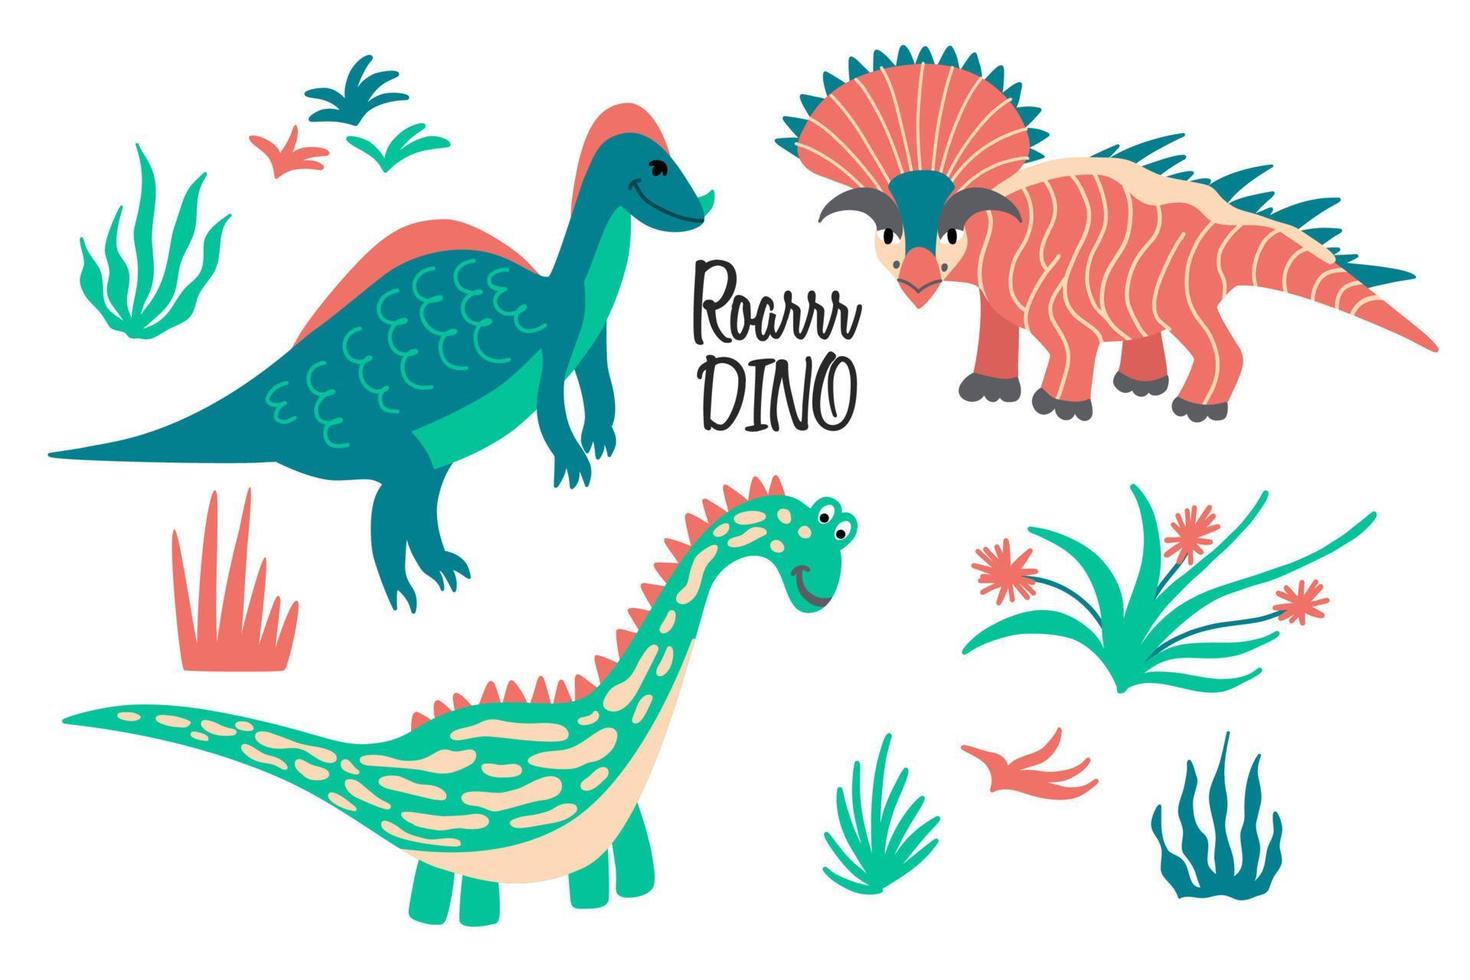 ambientado con dinosaurios y plantas infantiles de dibujos animados vector